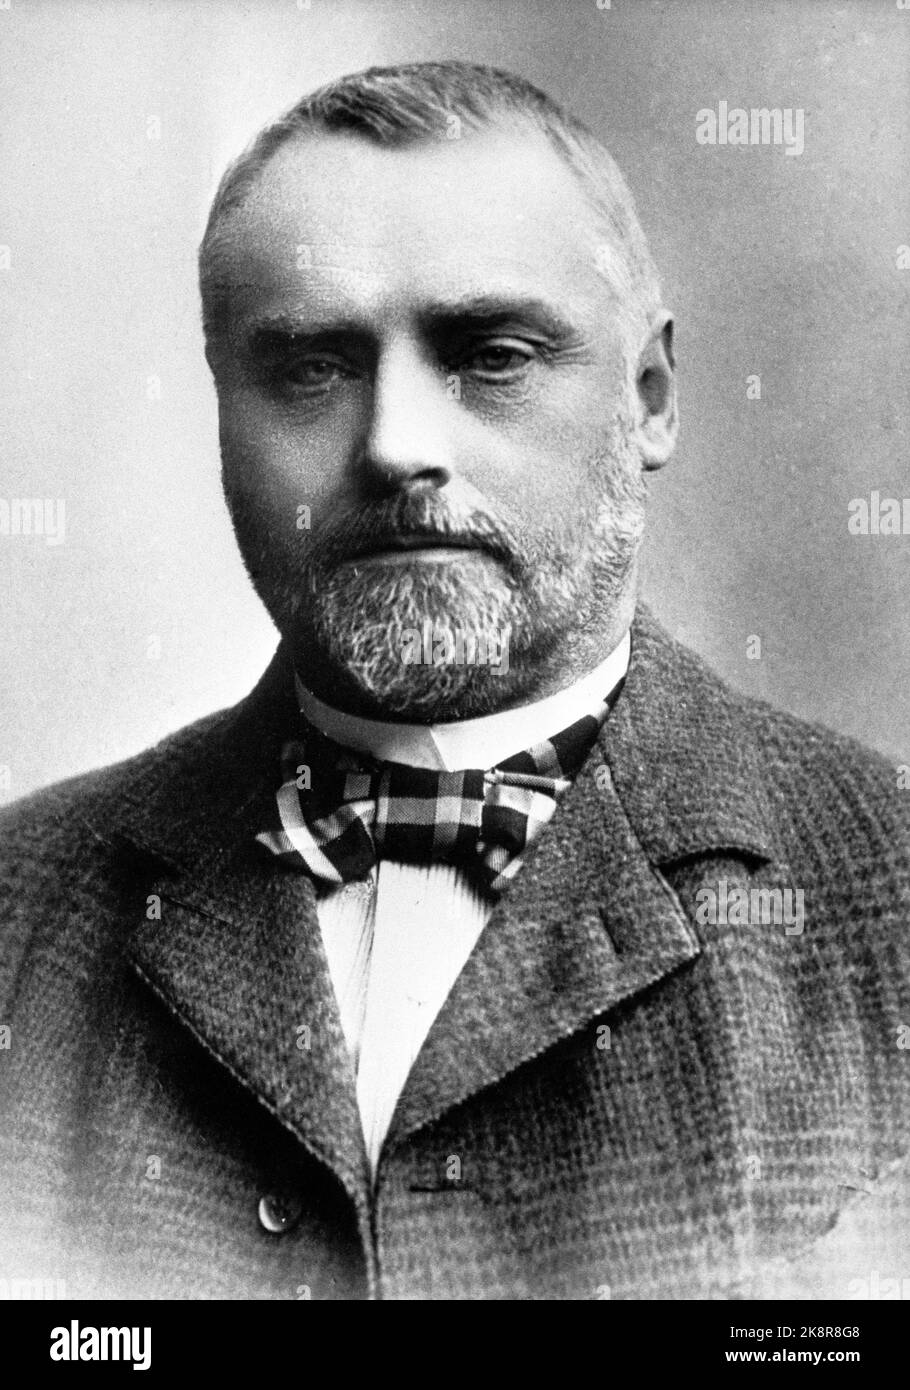 Wollert Konow. S B. 1845 - 1924. Primo ministro nel periodo 1910/1912. Data sconosciuta. Foto: Archivio NTB / NTB Foto Stock